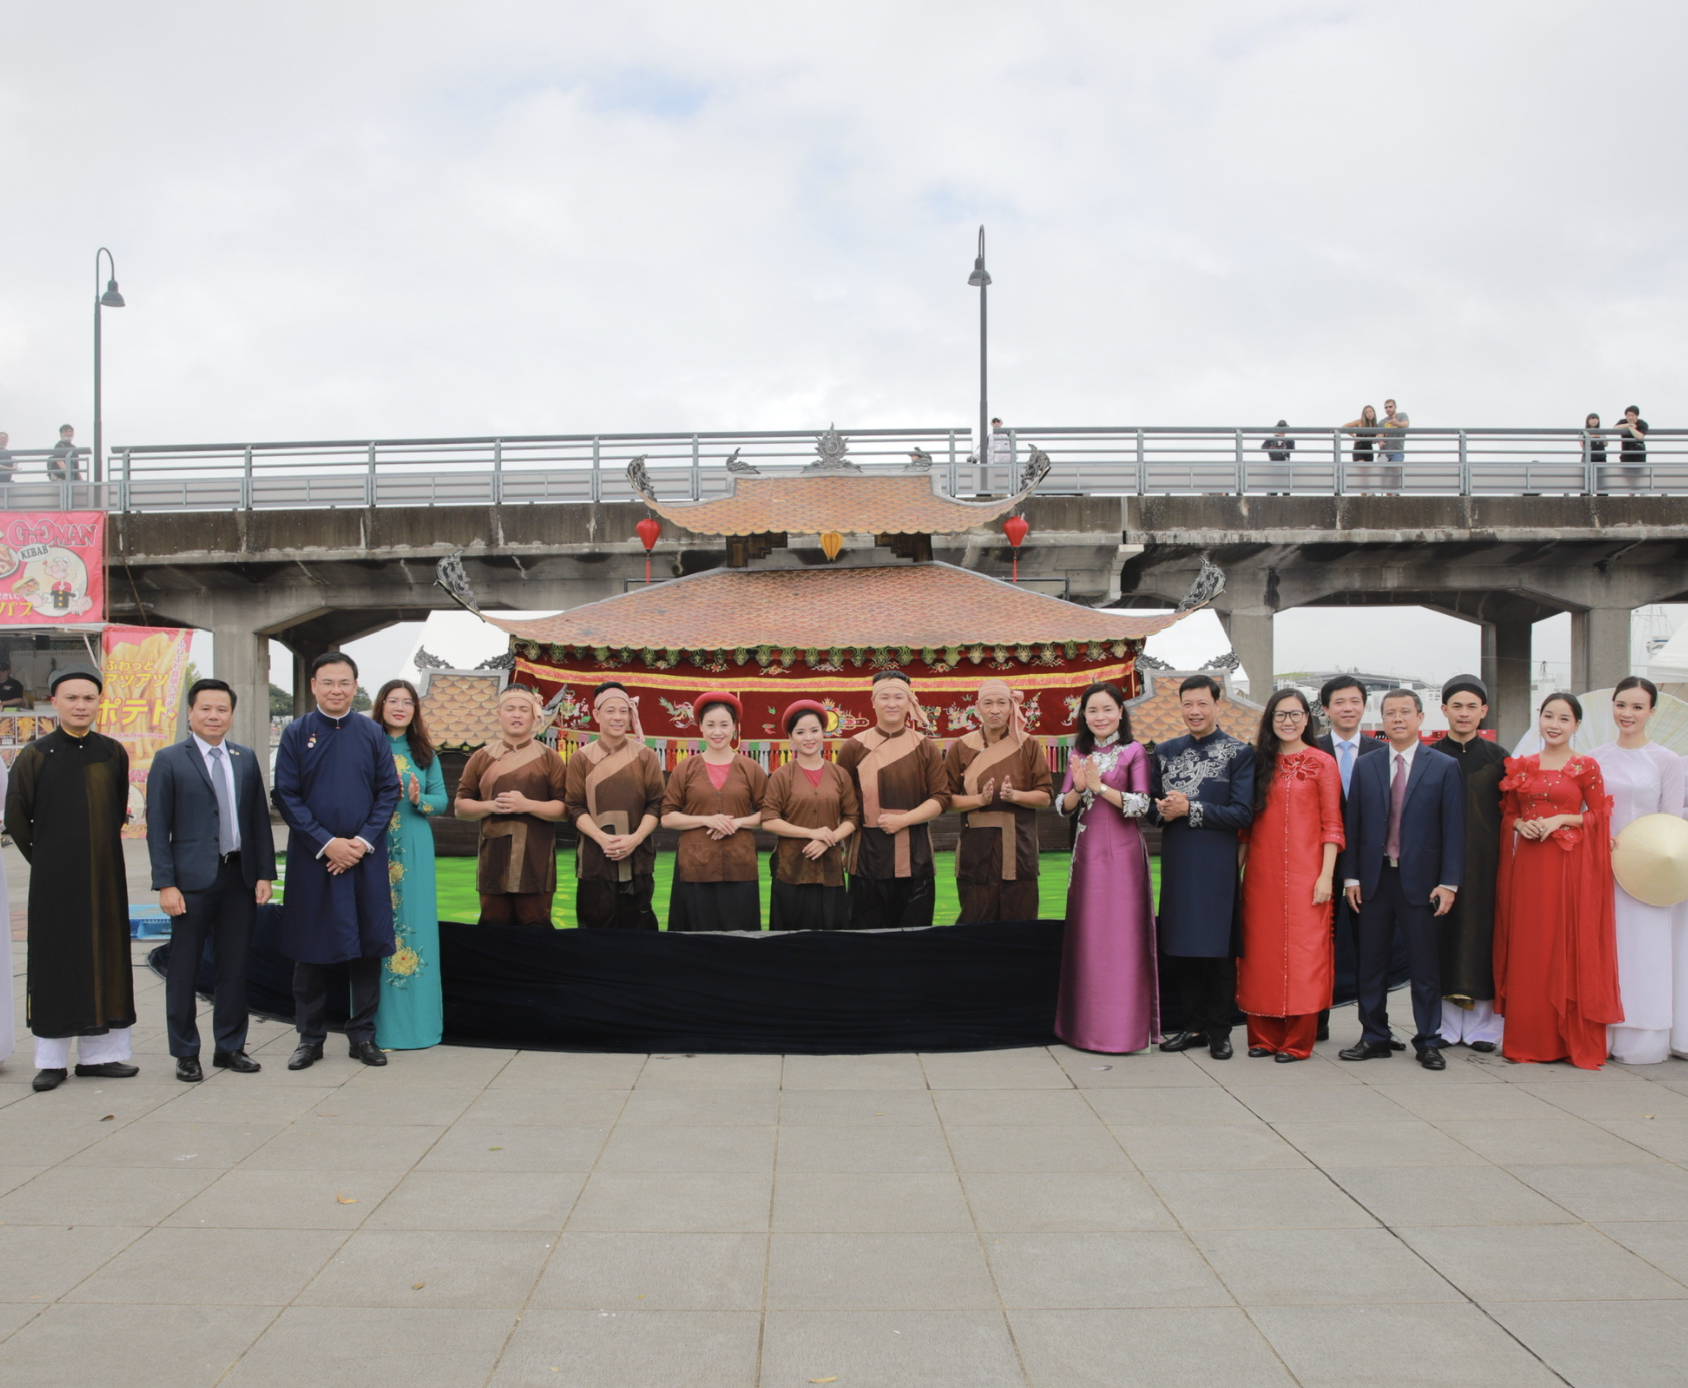 Khai mạc Lễ hội Văn hóa Việt Nam tại Kanagawa– giao thoa văn hóa nghệ thuật, cầu nối thúc đẩy du lịch Việt Nam – Nhật Bản.